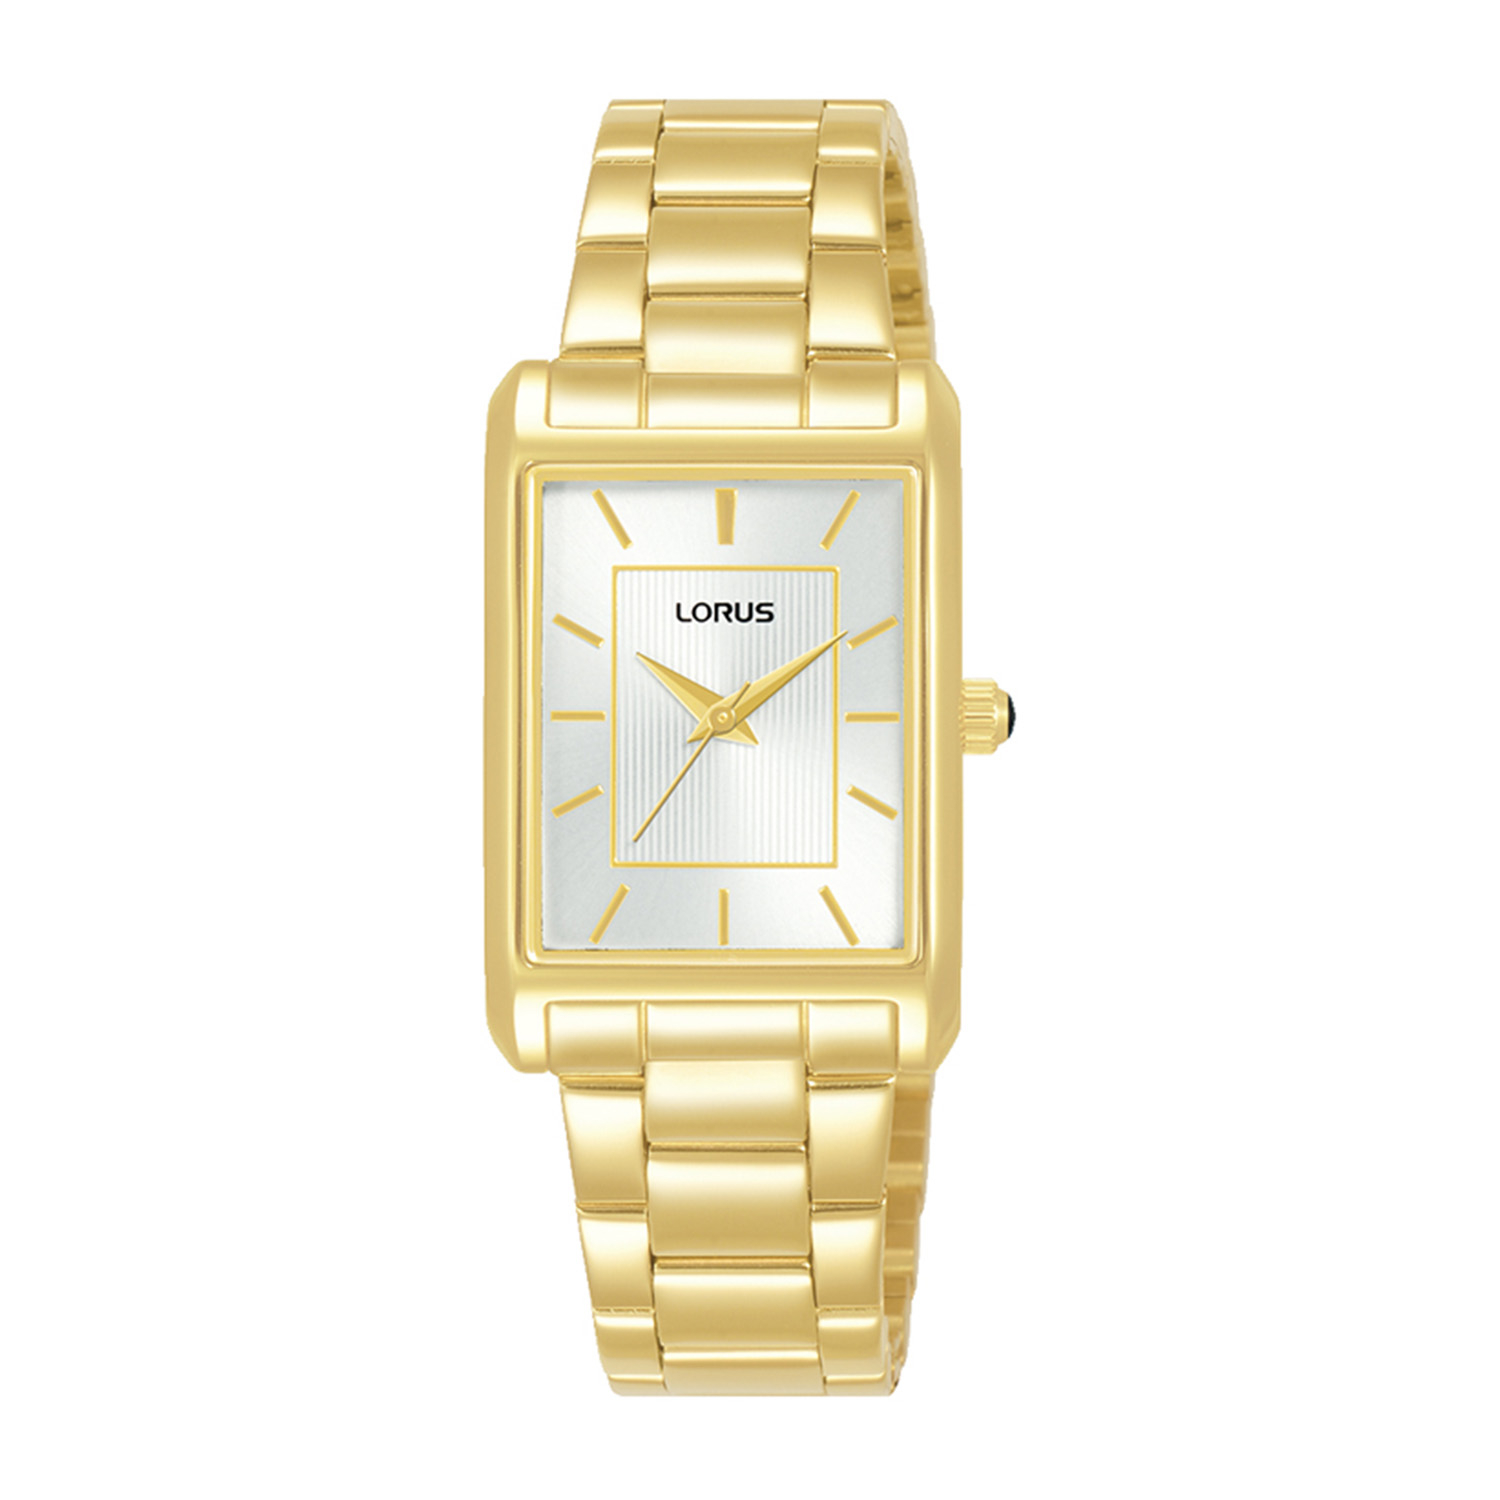 Γυναικείο ρολόι LORUS από χρυσό ανοξείδωτο ατσάλι με λευκό καντράν και μπρασελέ.